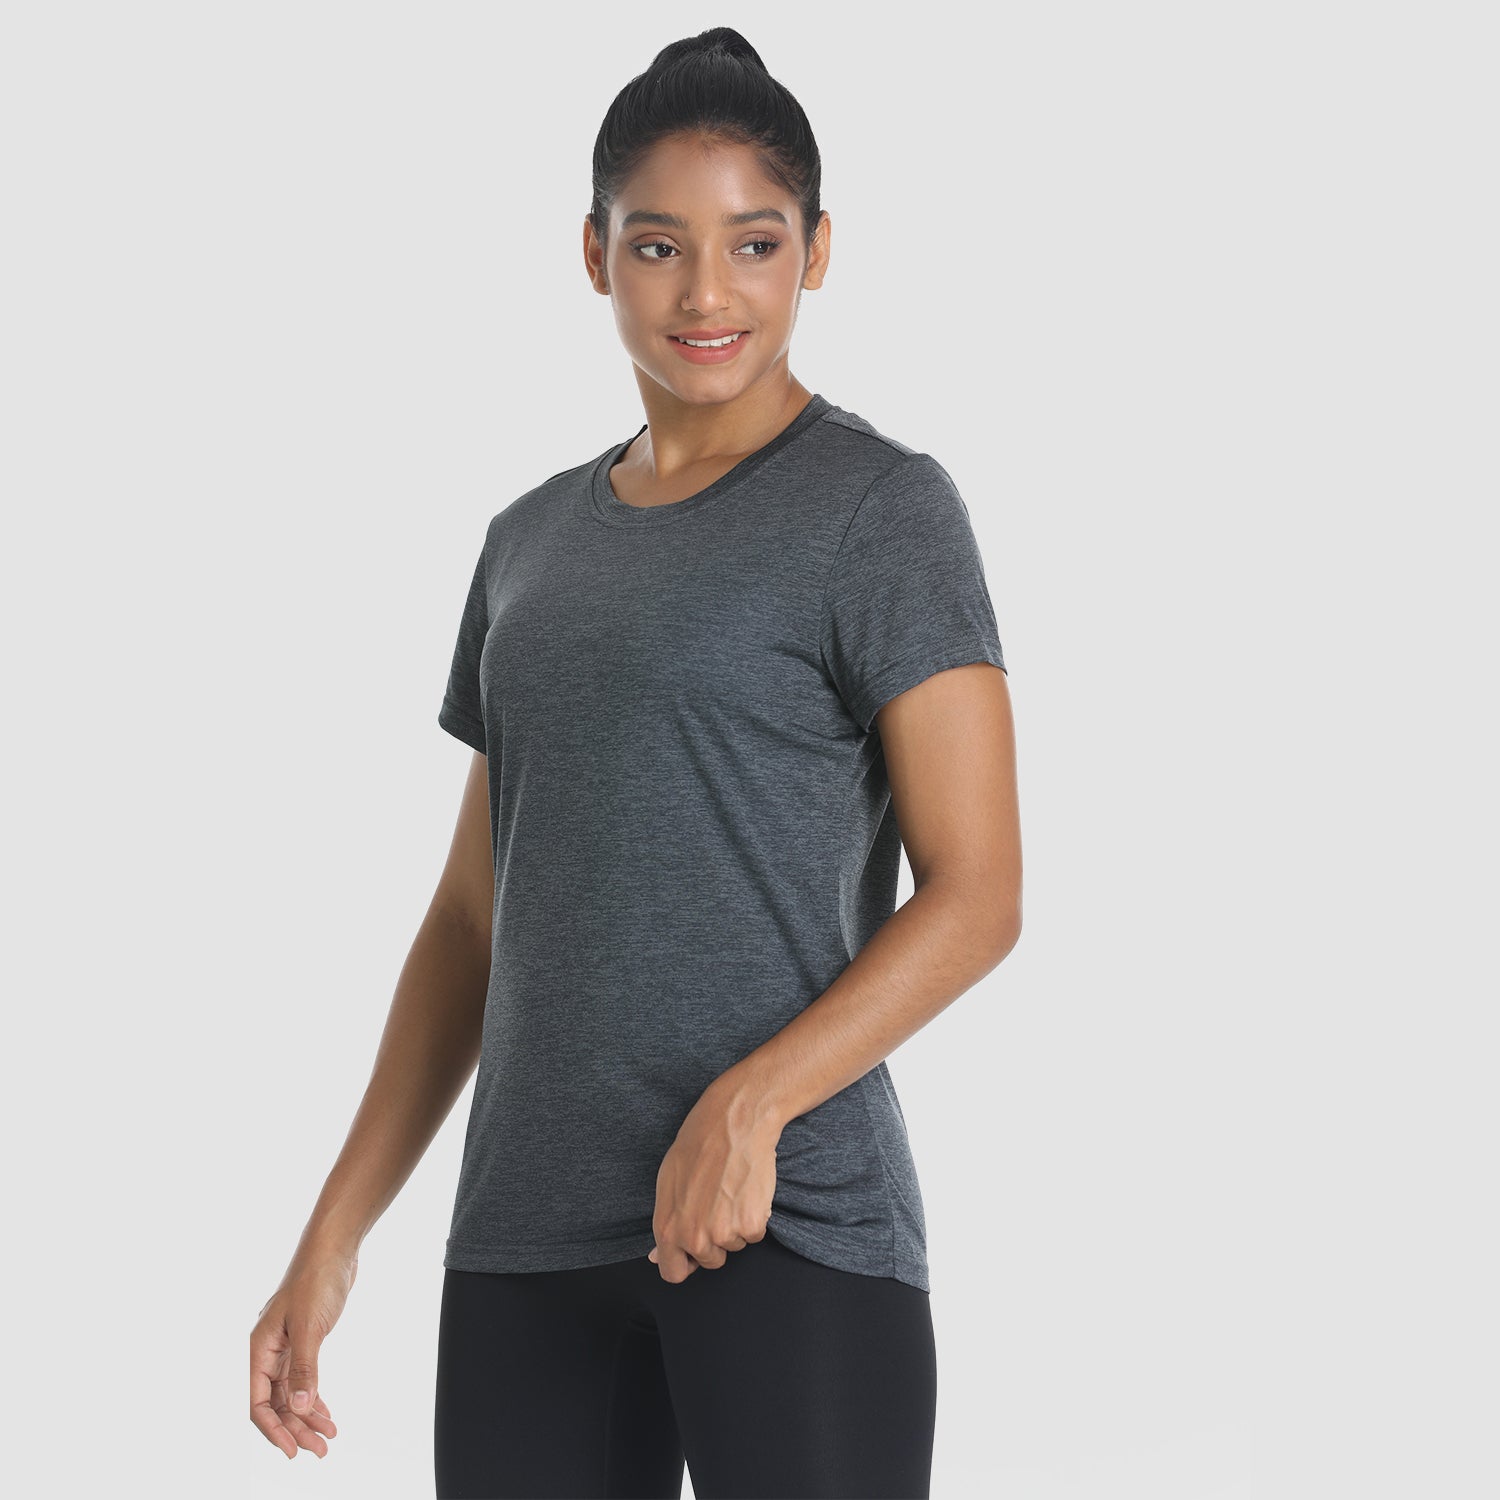 Women's Short Sleeve T-Shirt Quick Dry UPF 50+ Running Workout Tee